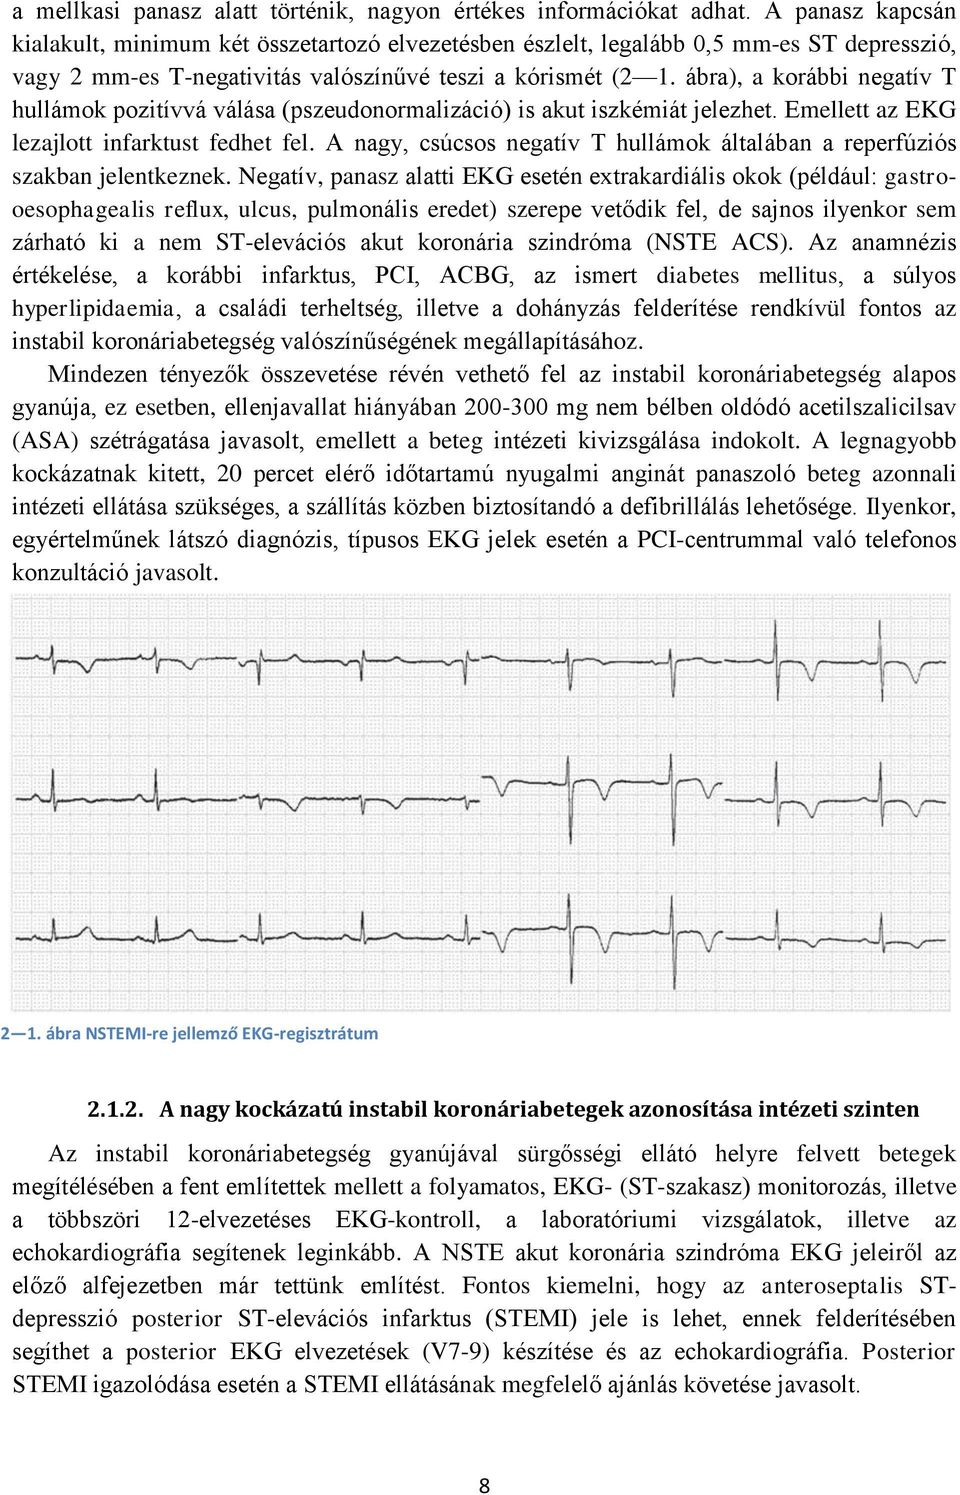 ábra), a korábbi negatív T hullámok pozitívvá válása (pszeudonormalizáció) is akut iszkémiát jelezhet. Emellett az EKG lezajlott infarktust fedhet fel.